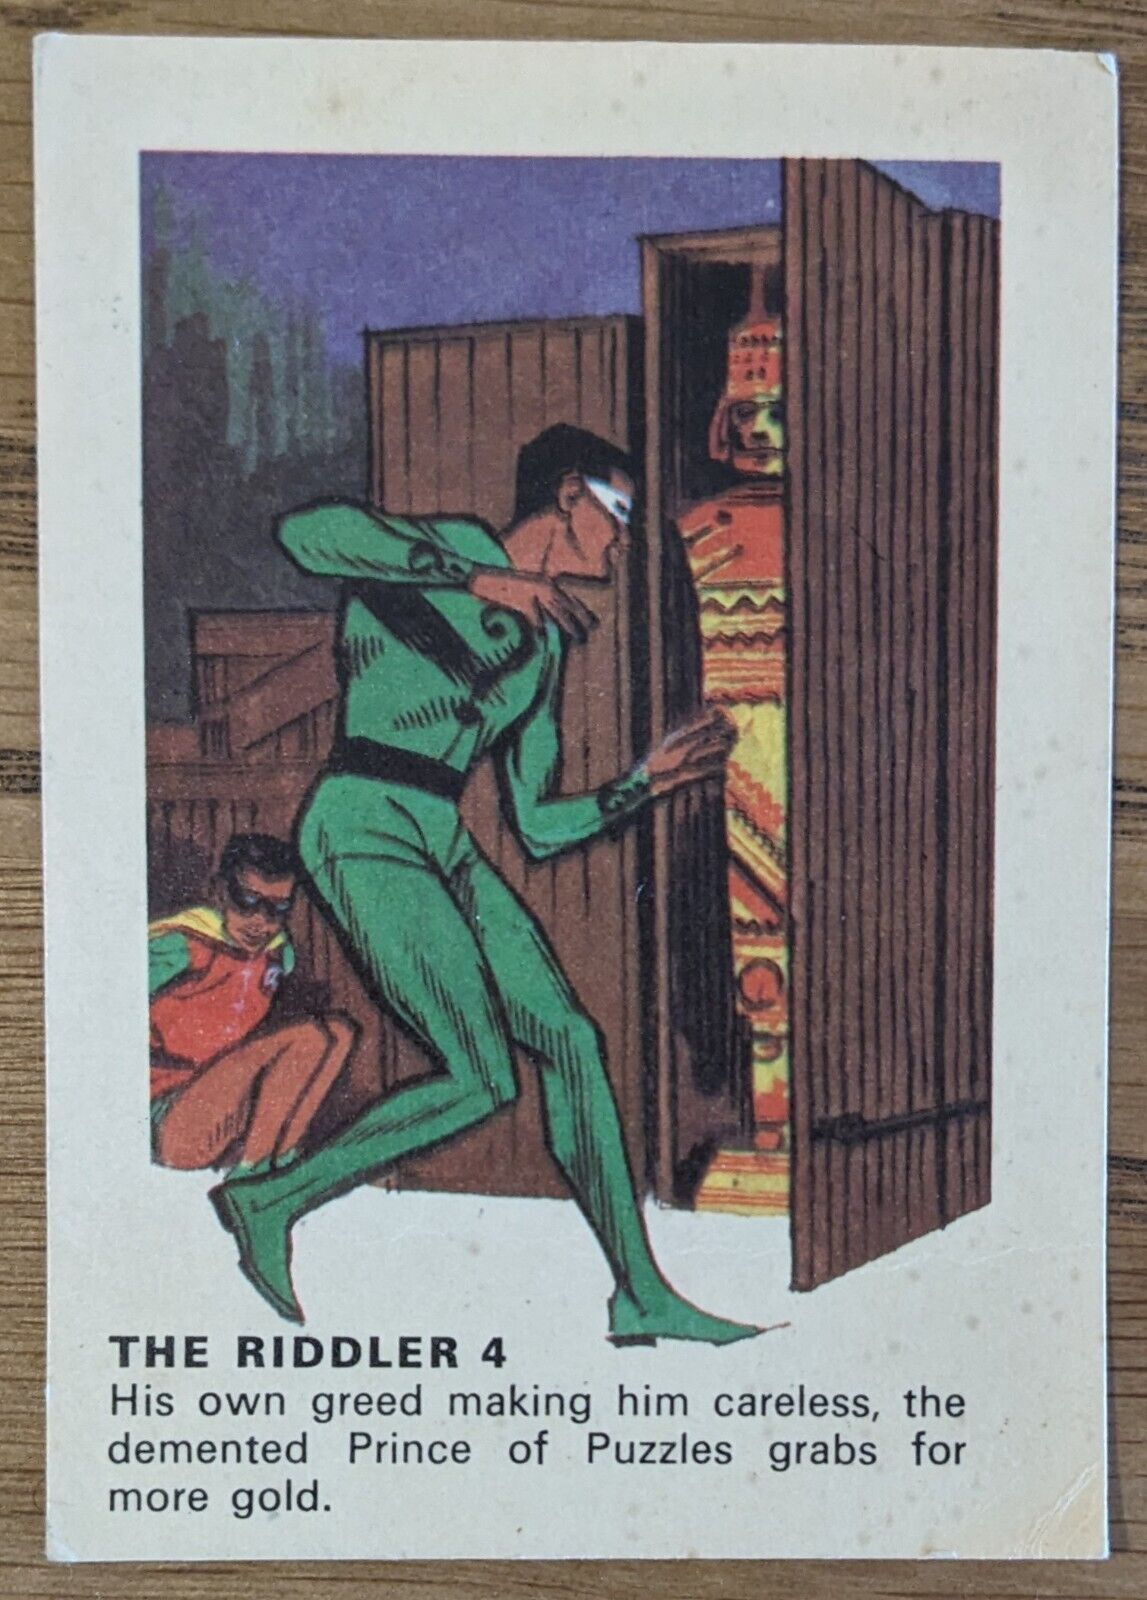 1966 Batman Weeties & Rice Krinkles Card - The Riddler 4 - Scarce